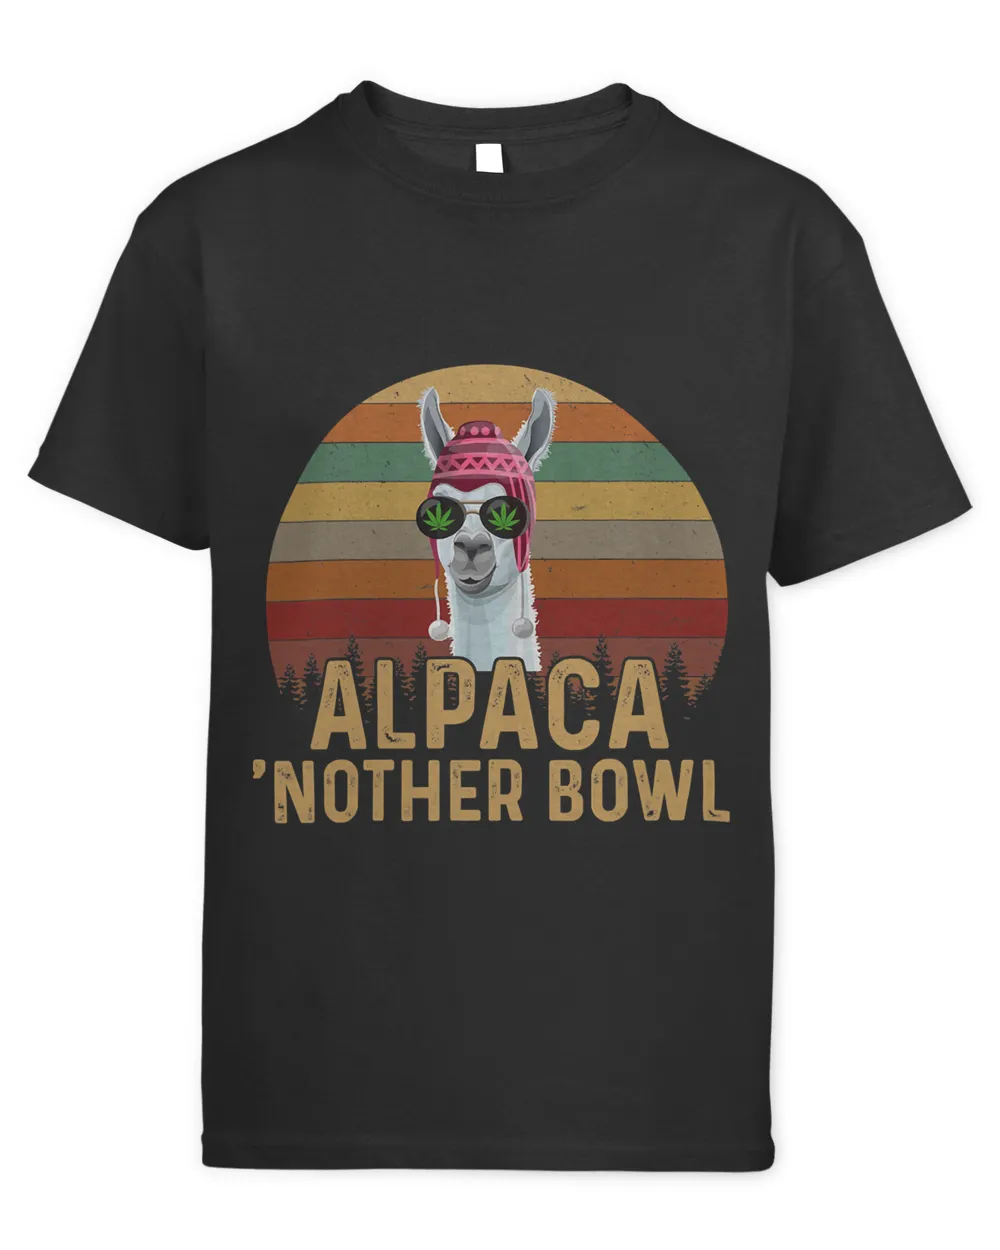 Alpaca 'Nother Bowl, Funny Marijuana T-Shirt